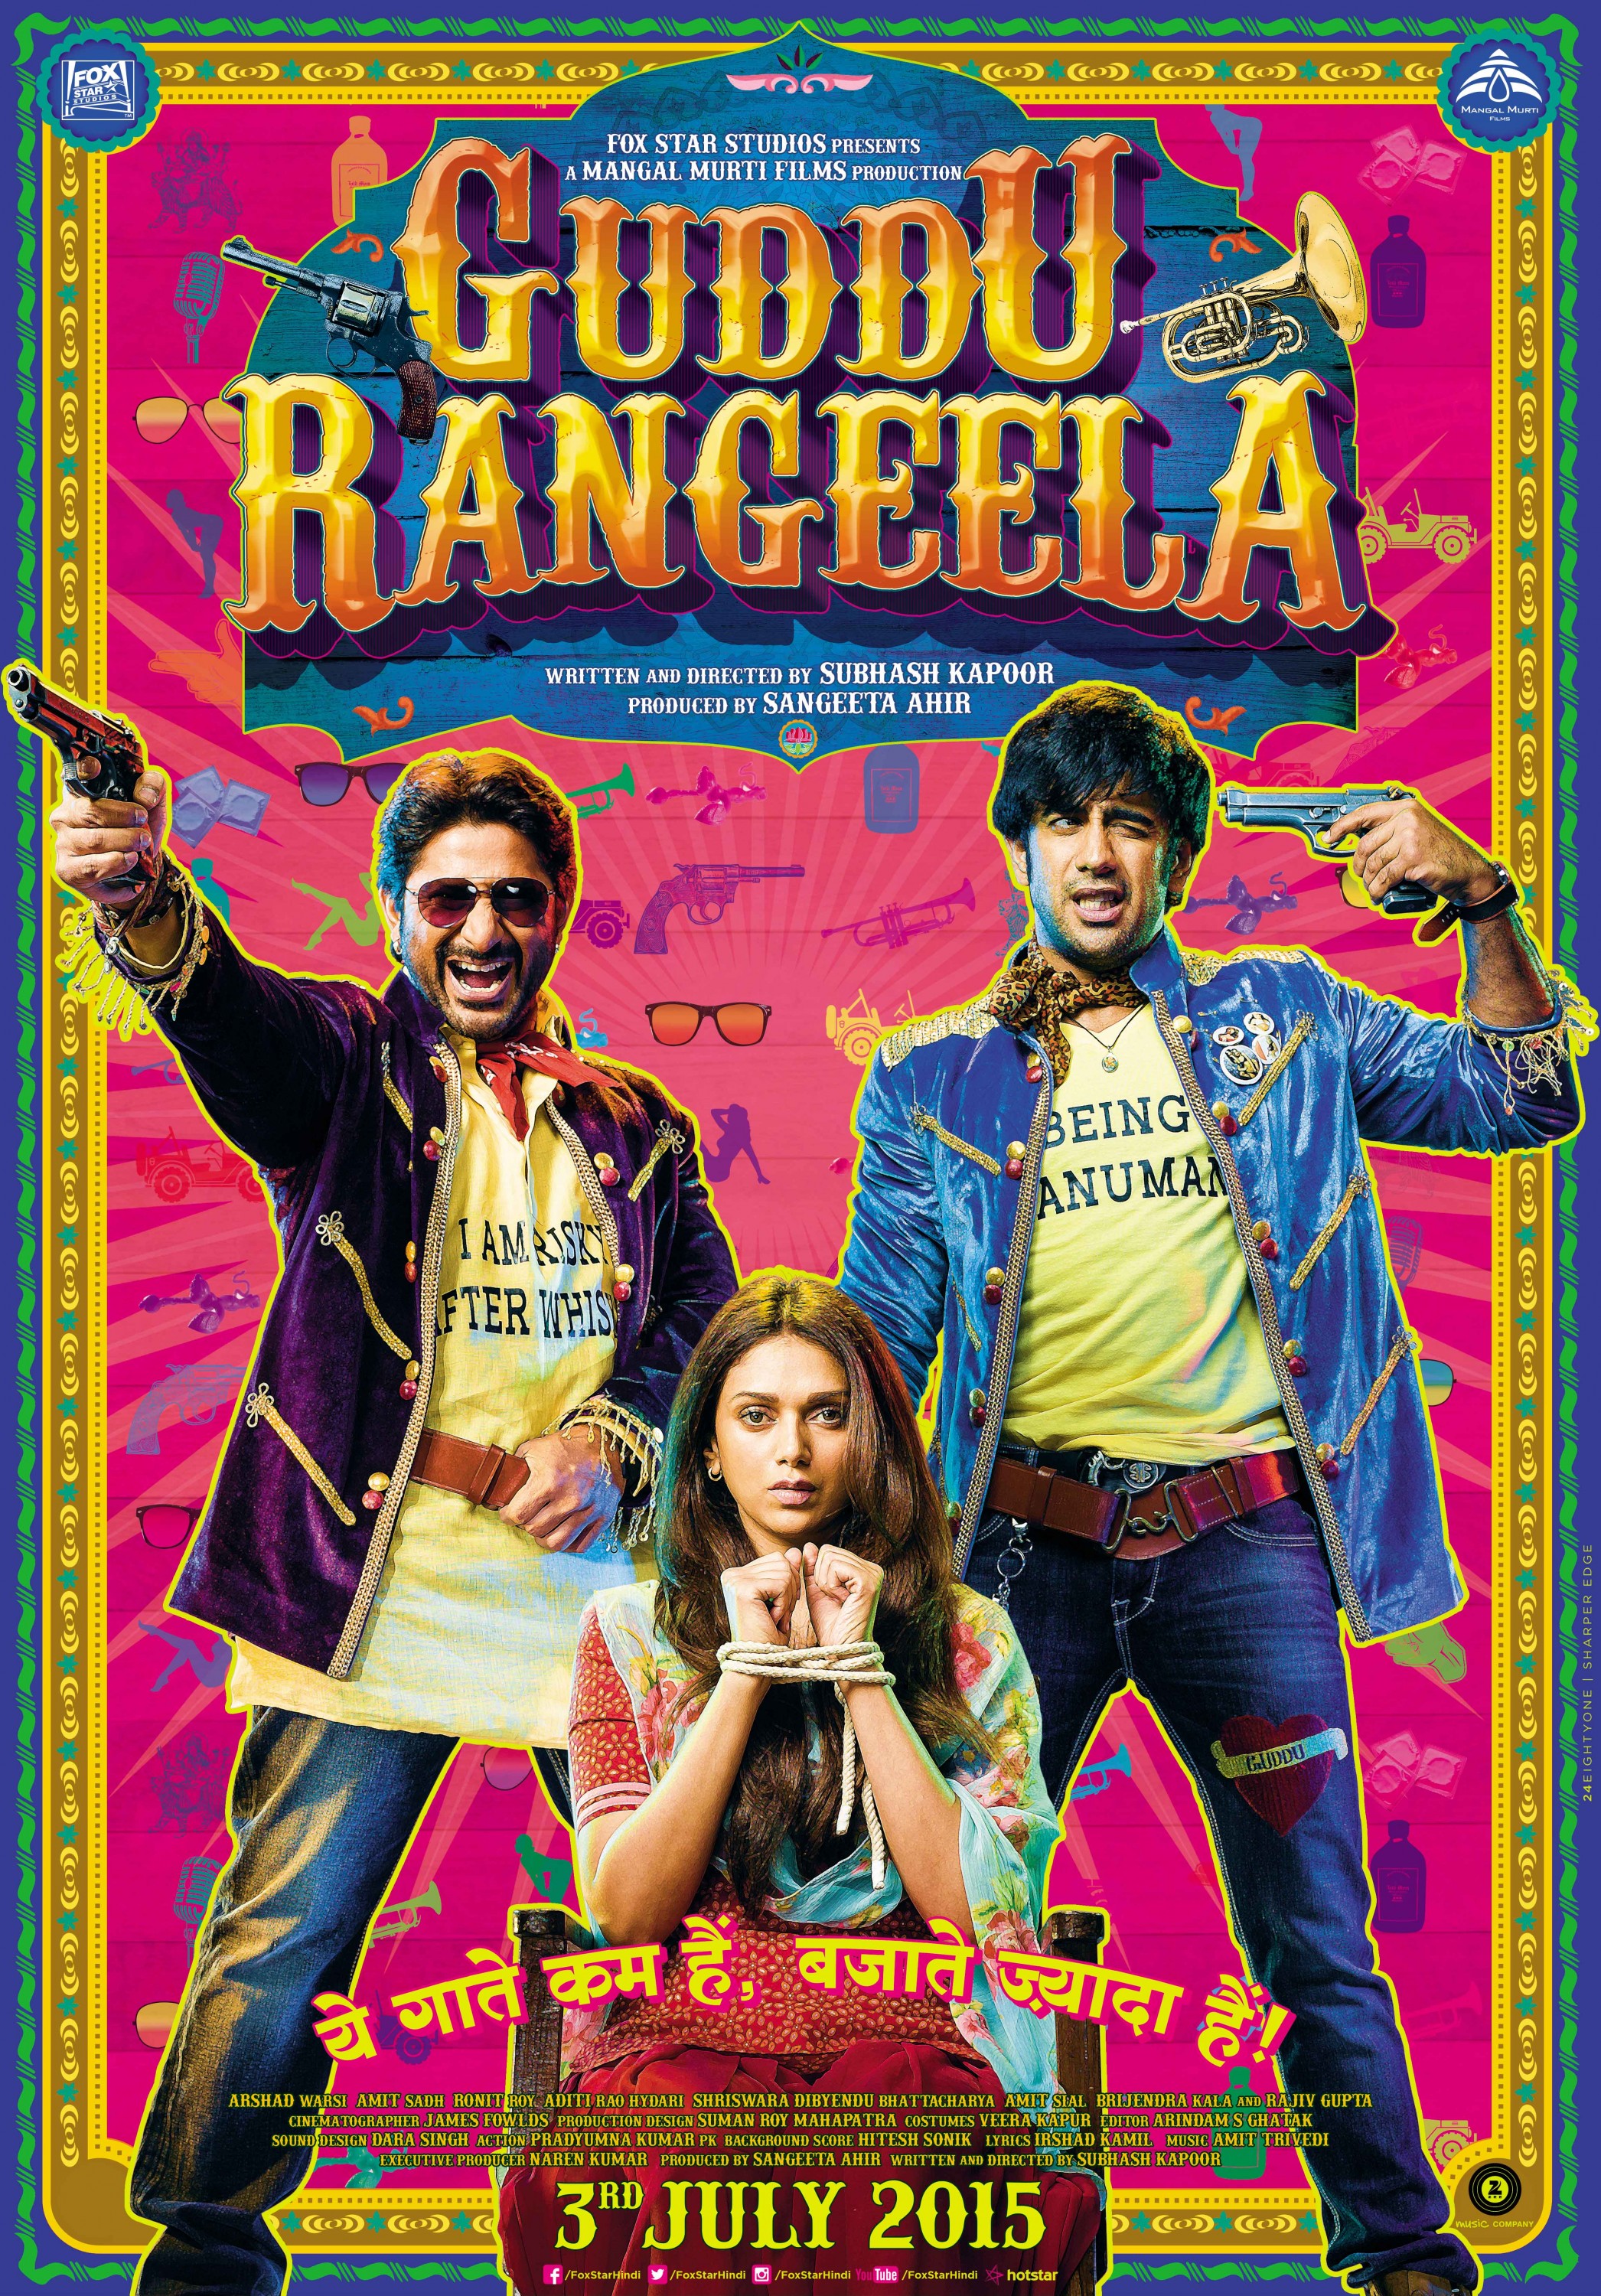 Mega Sized Movie Poster Image for Guddu Rangeela 